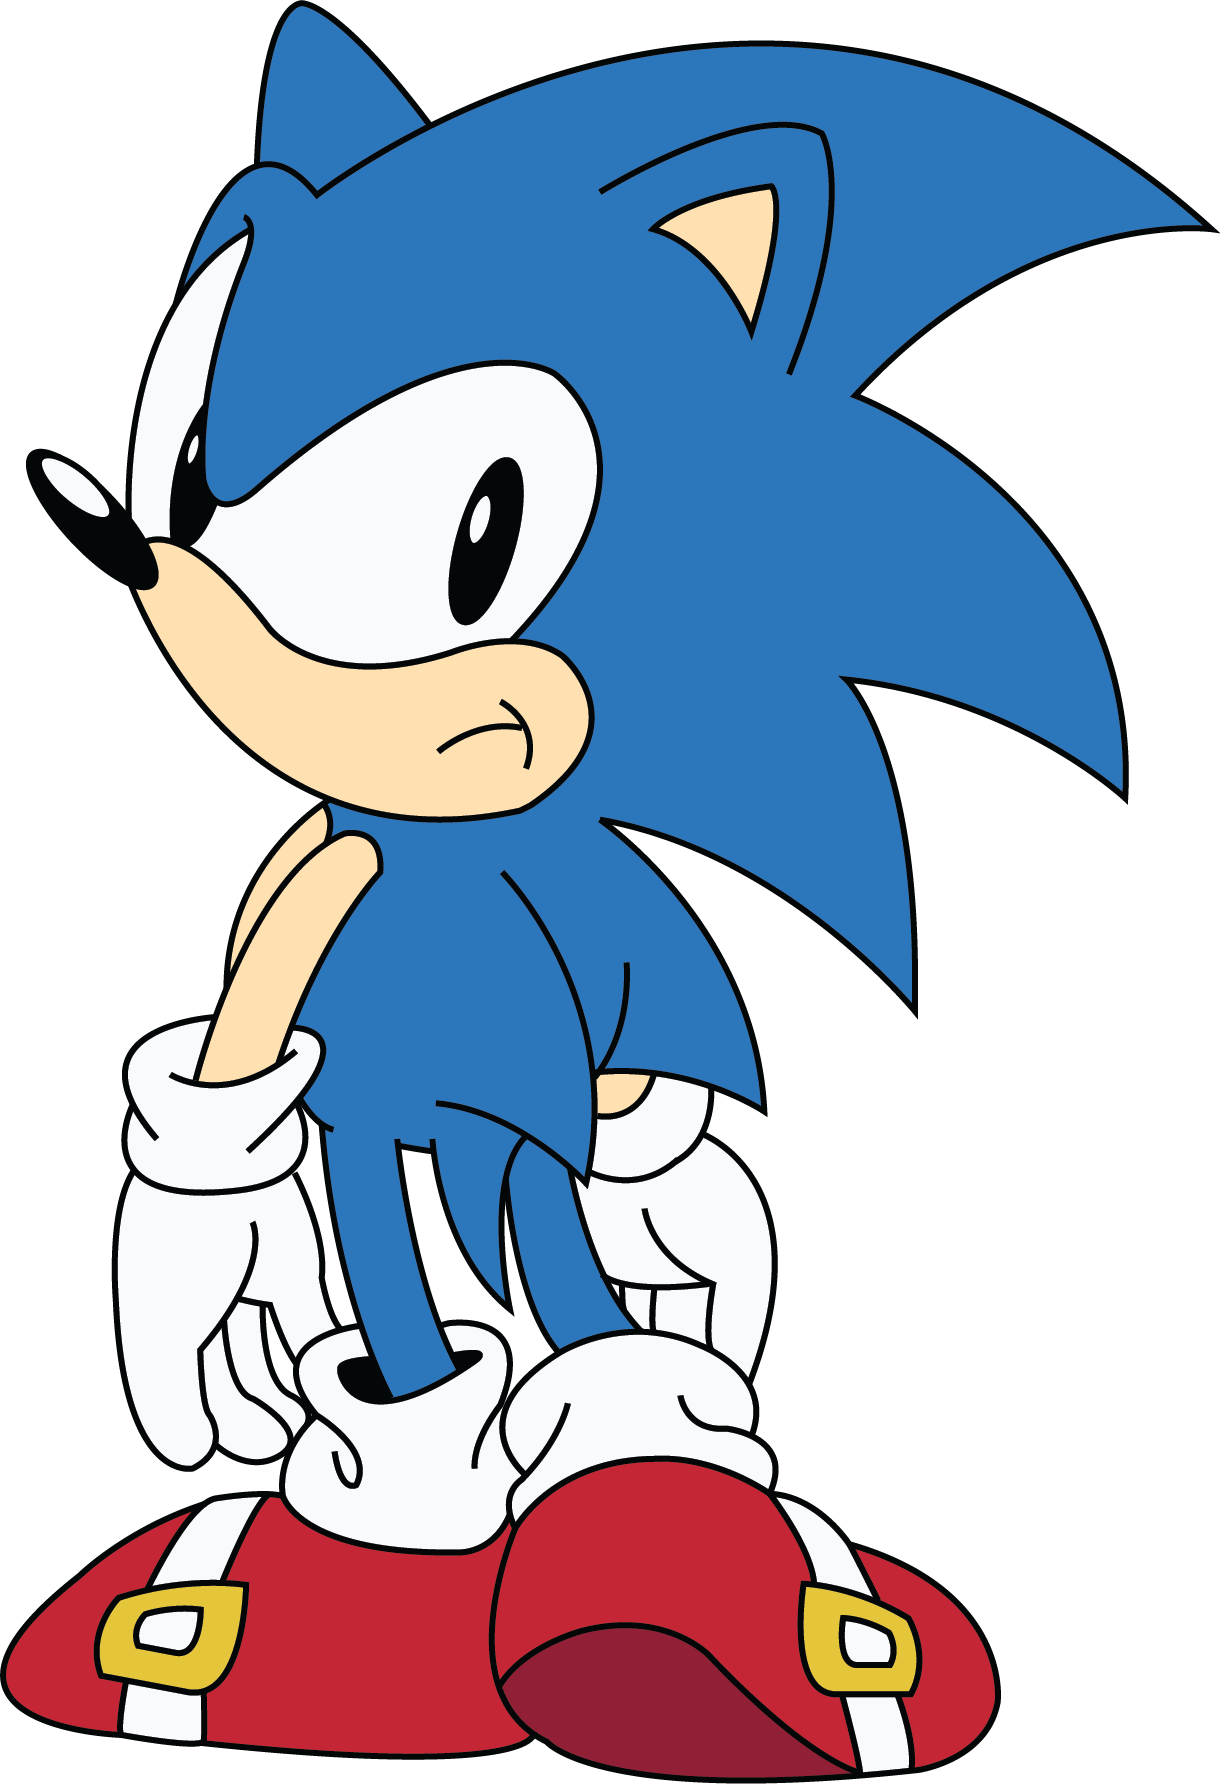 Оригинальный sonic. Classic Sonic. Соник и Классик Соник. Соник и классический Соник. Classic Sonic Art.